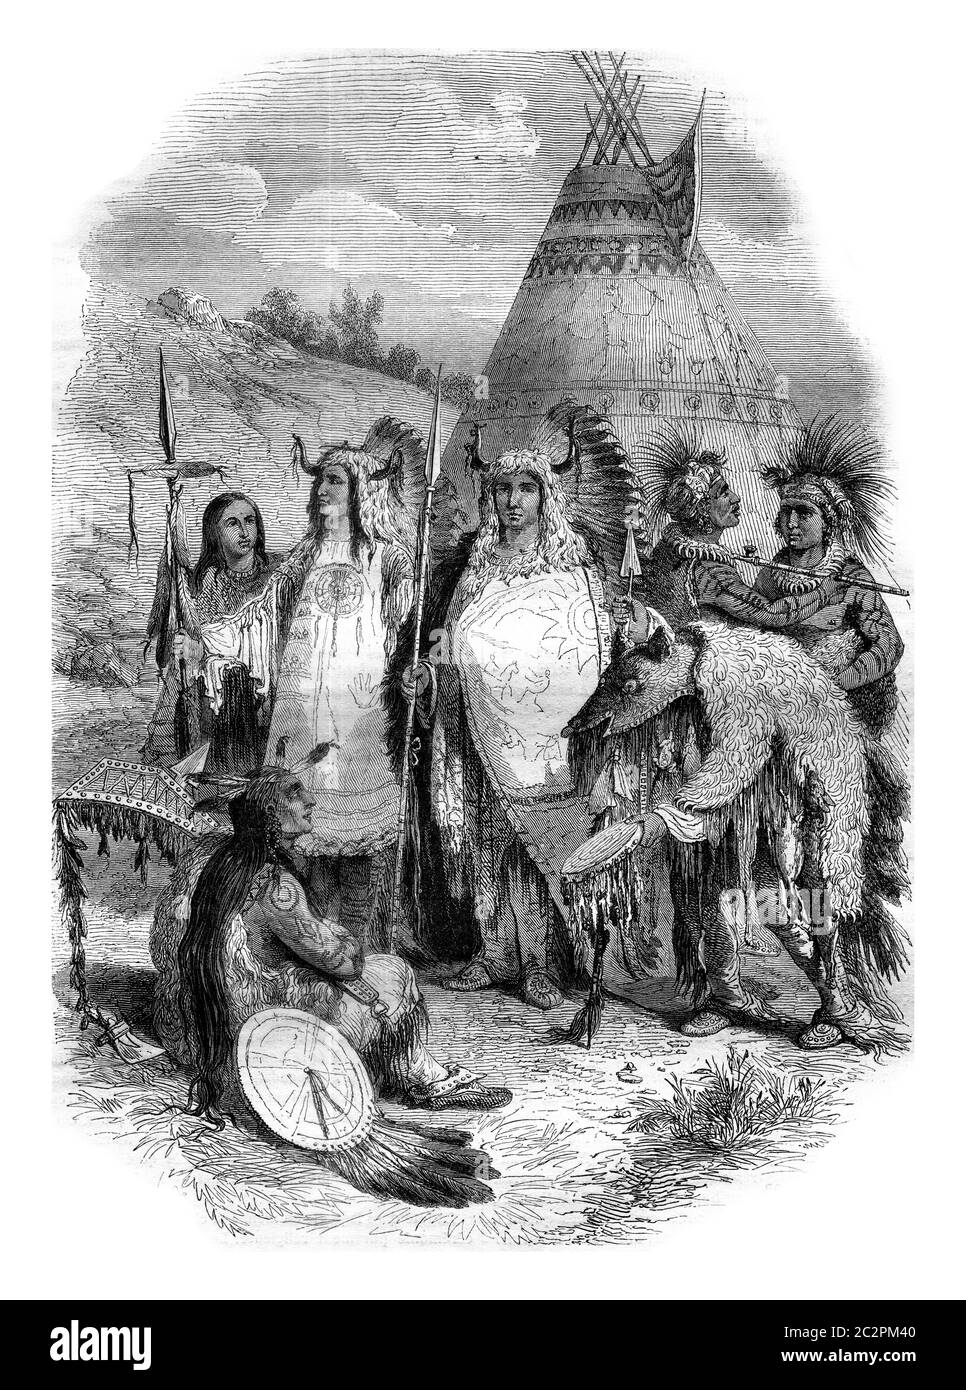 Wilde westliche Prärien in Nordamerika, Vintage gravierte Illustration. Magasin Pittoresque 1845. Stockfoto